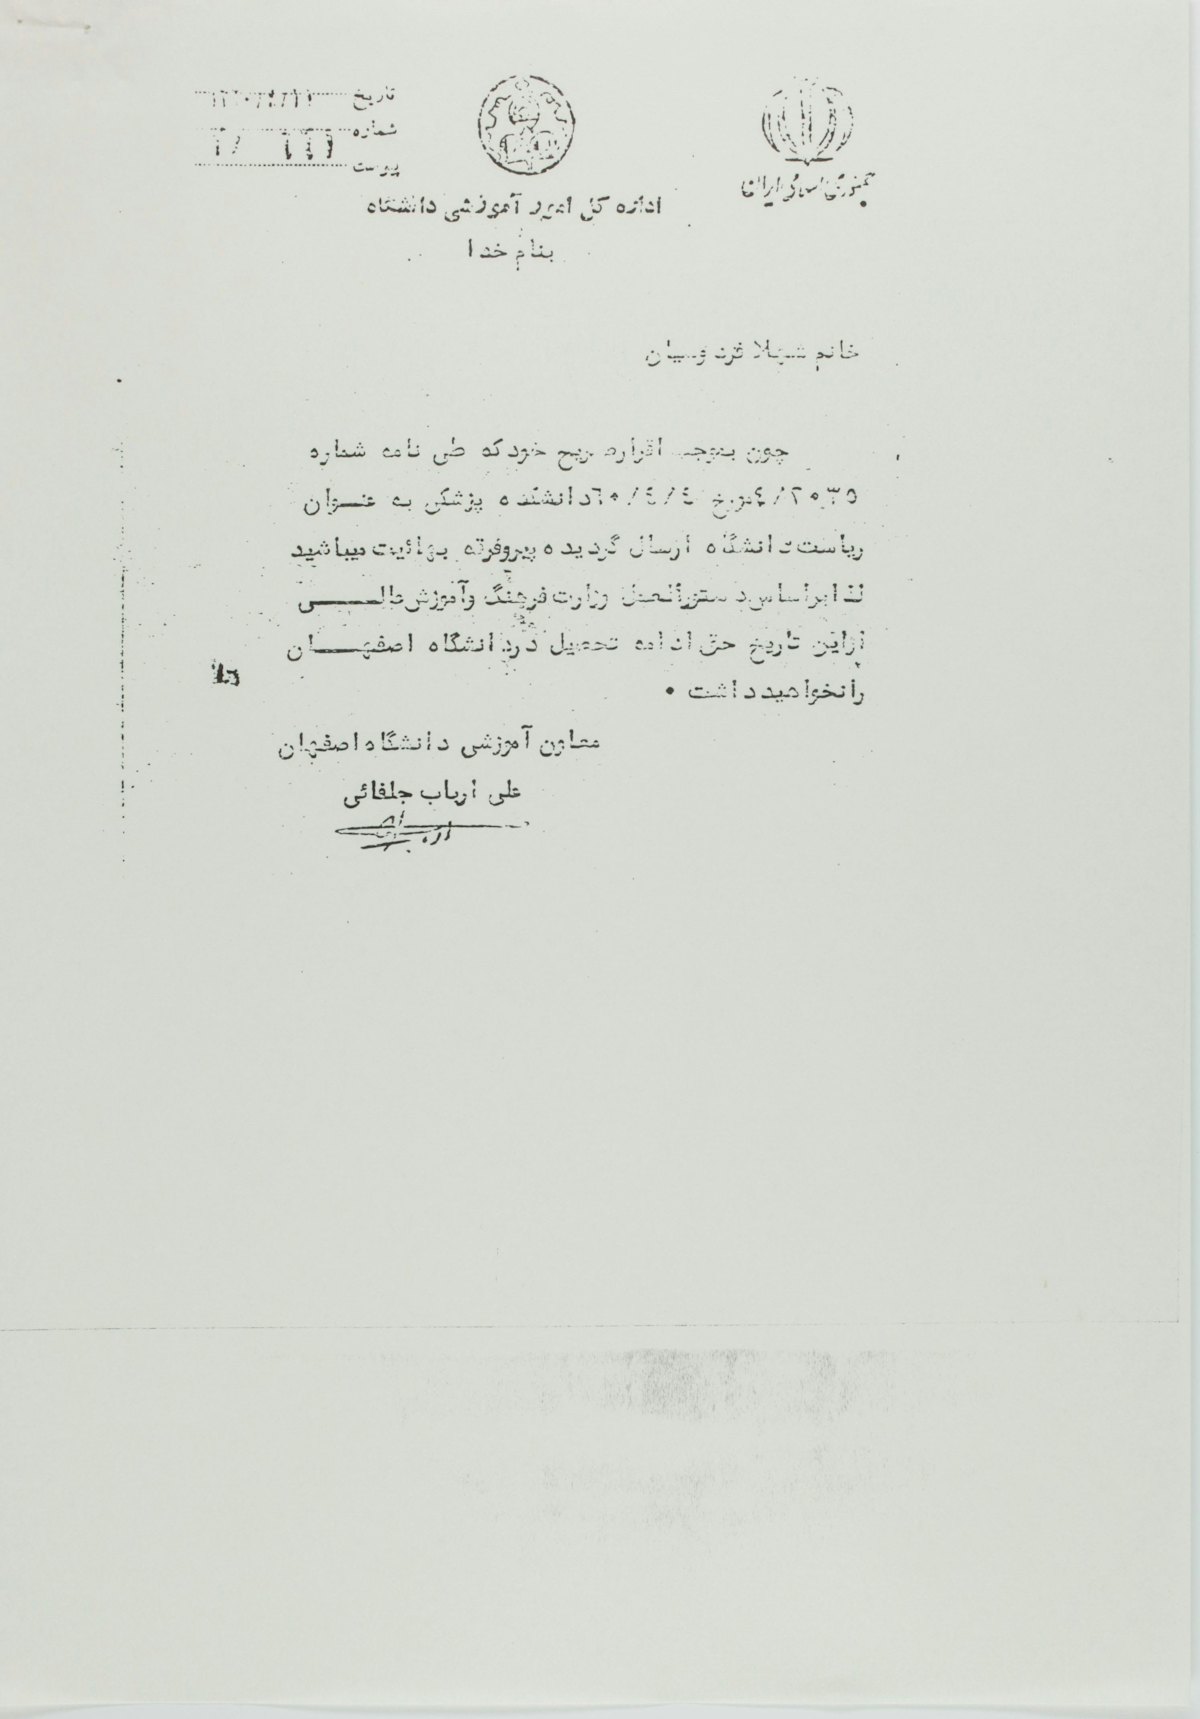 Lettre du bureau des Affaires générales éducatives de l’université d’Ispahan adressée à une étudiante. Elle déclare que, comme celle-ci est « une adepte de la secte bahá’íe », elle n’est « pas autorisée à poursuivre ses études ».